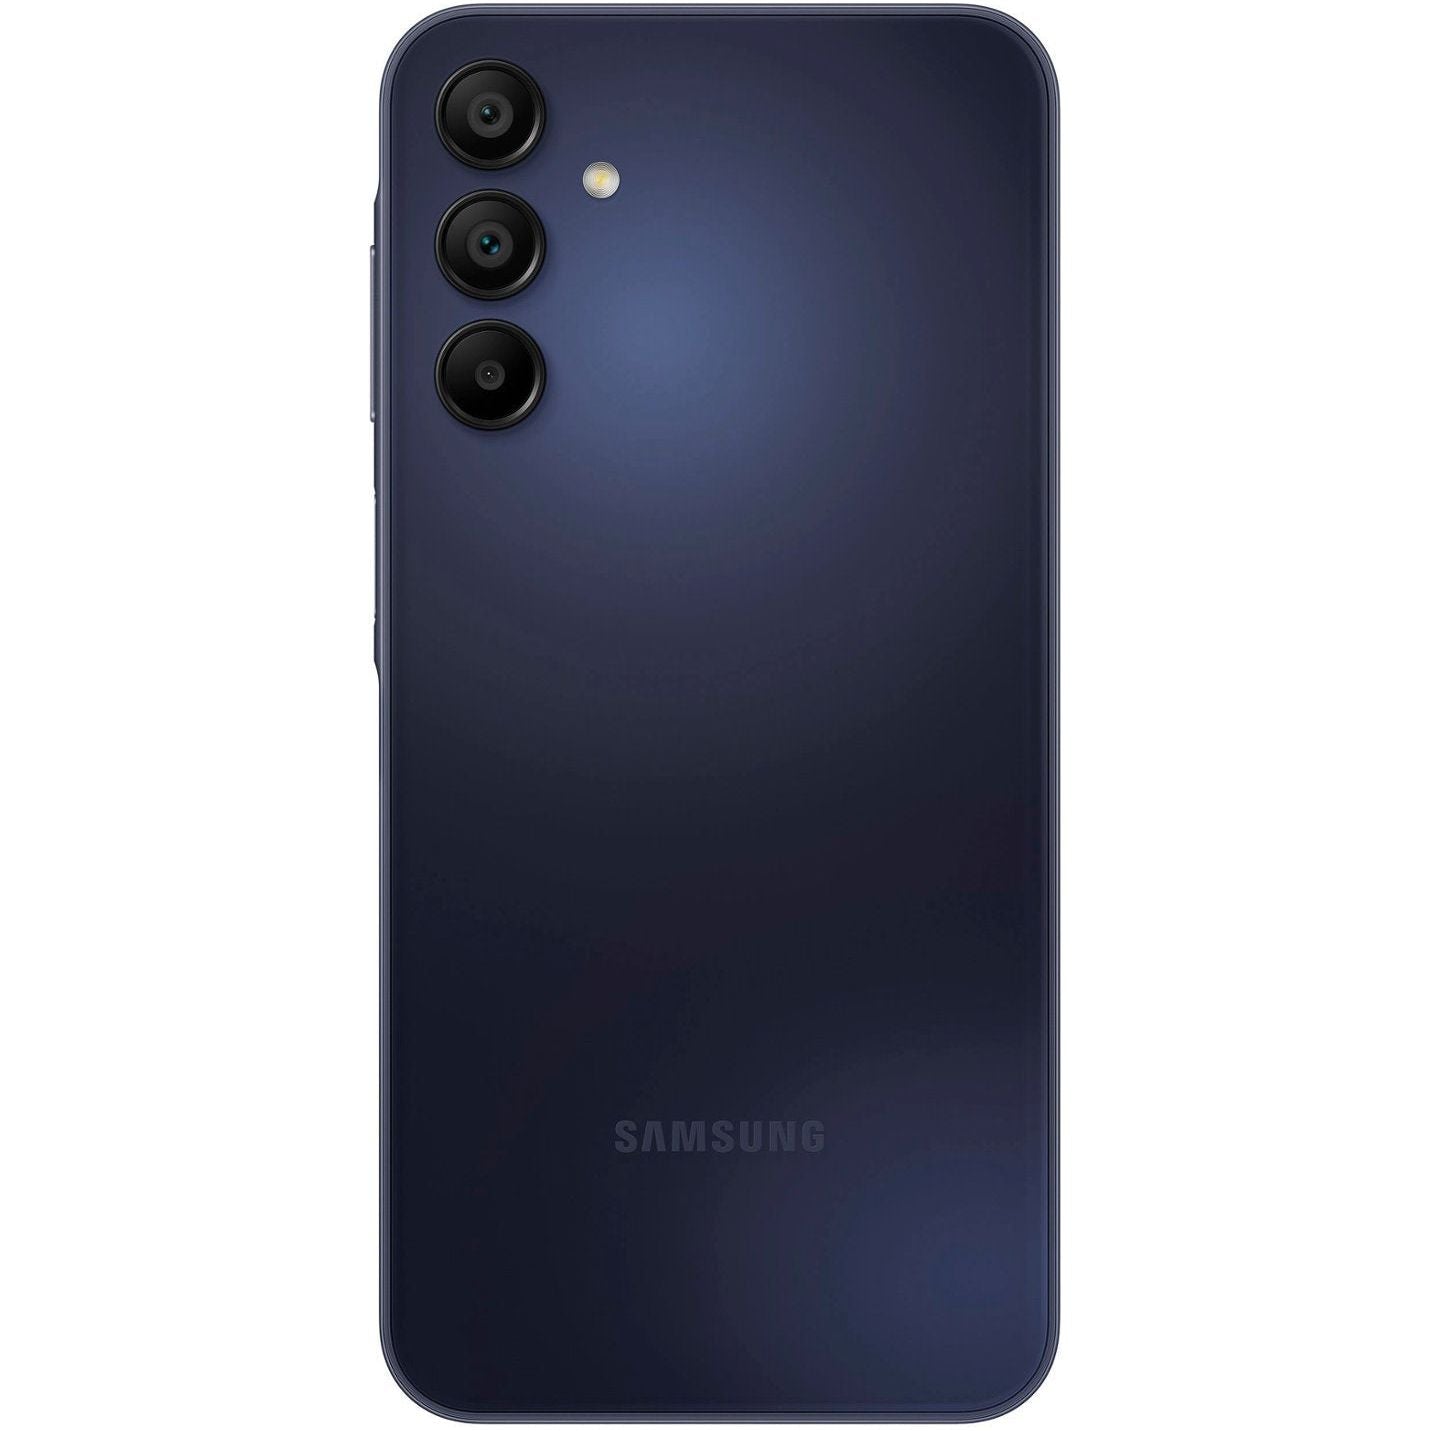 Samsung - Galaxy A15 5G 128GB (Unlocked) - Blue Black